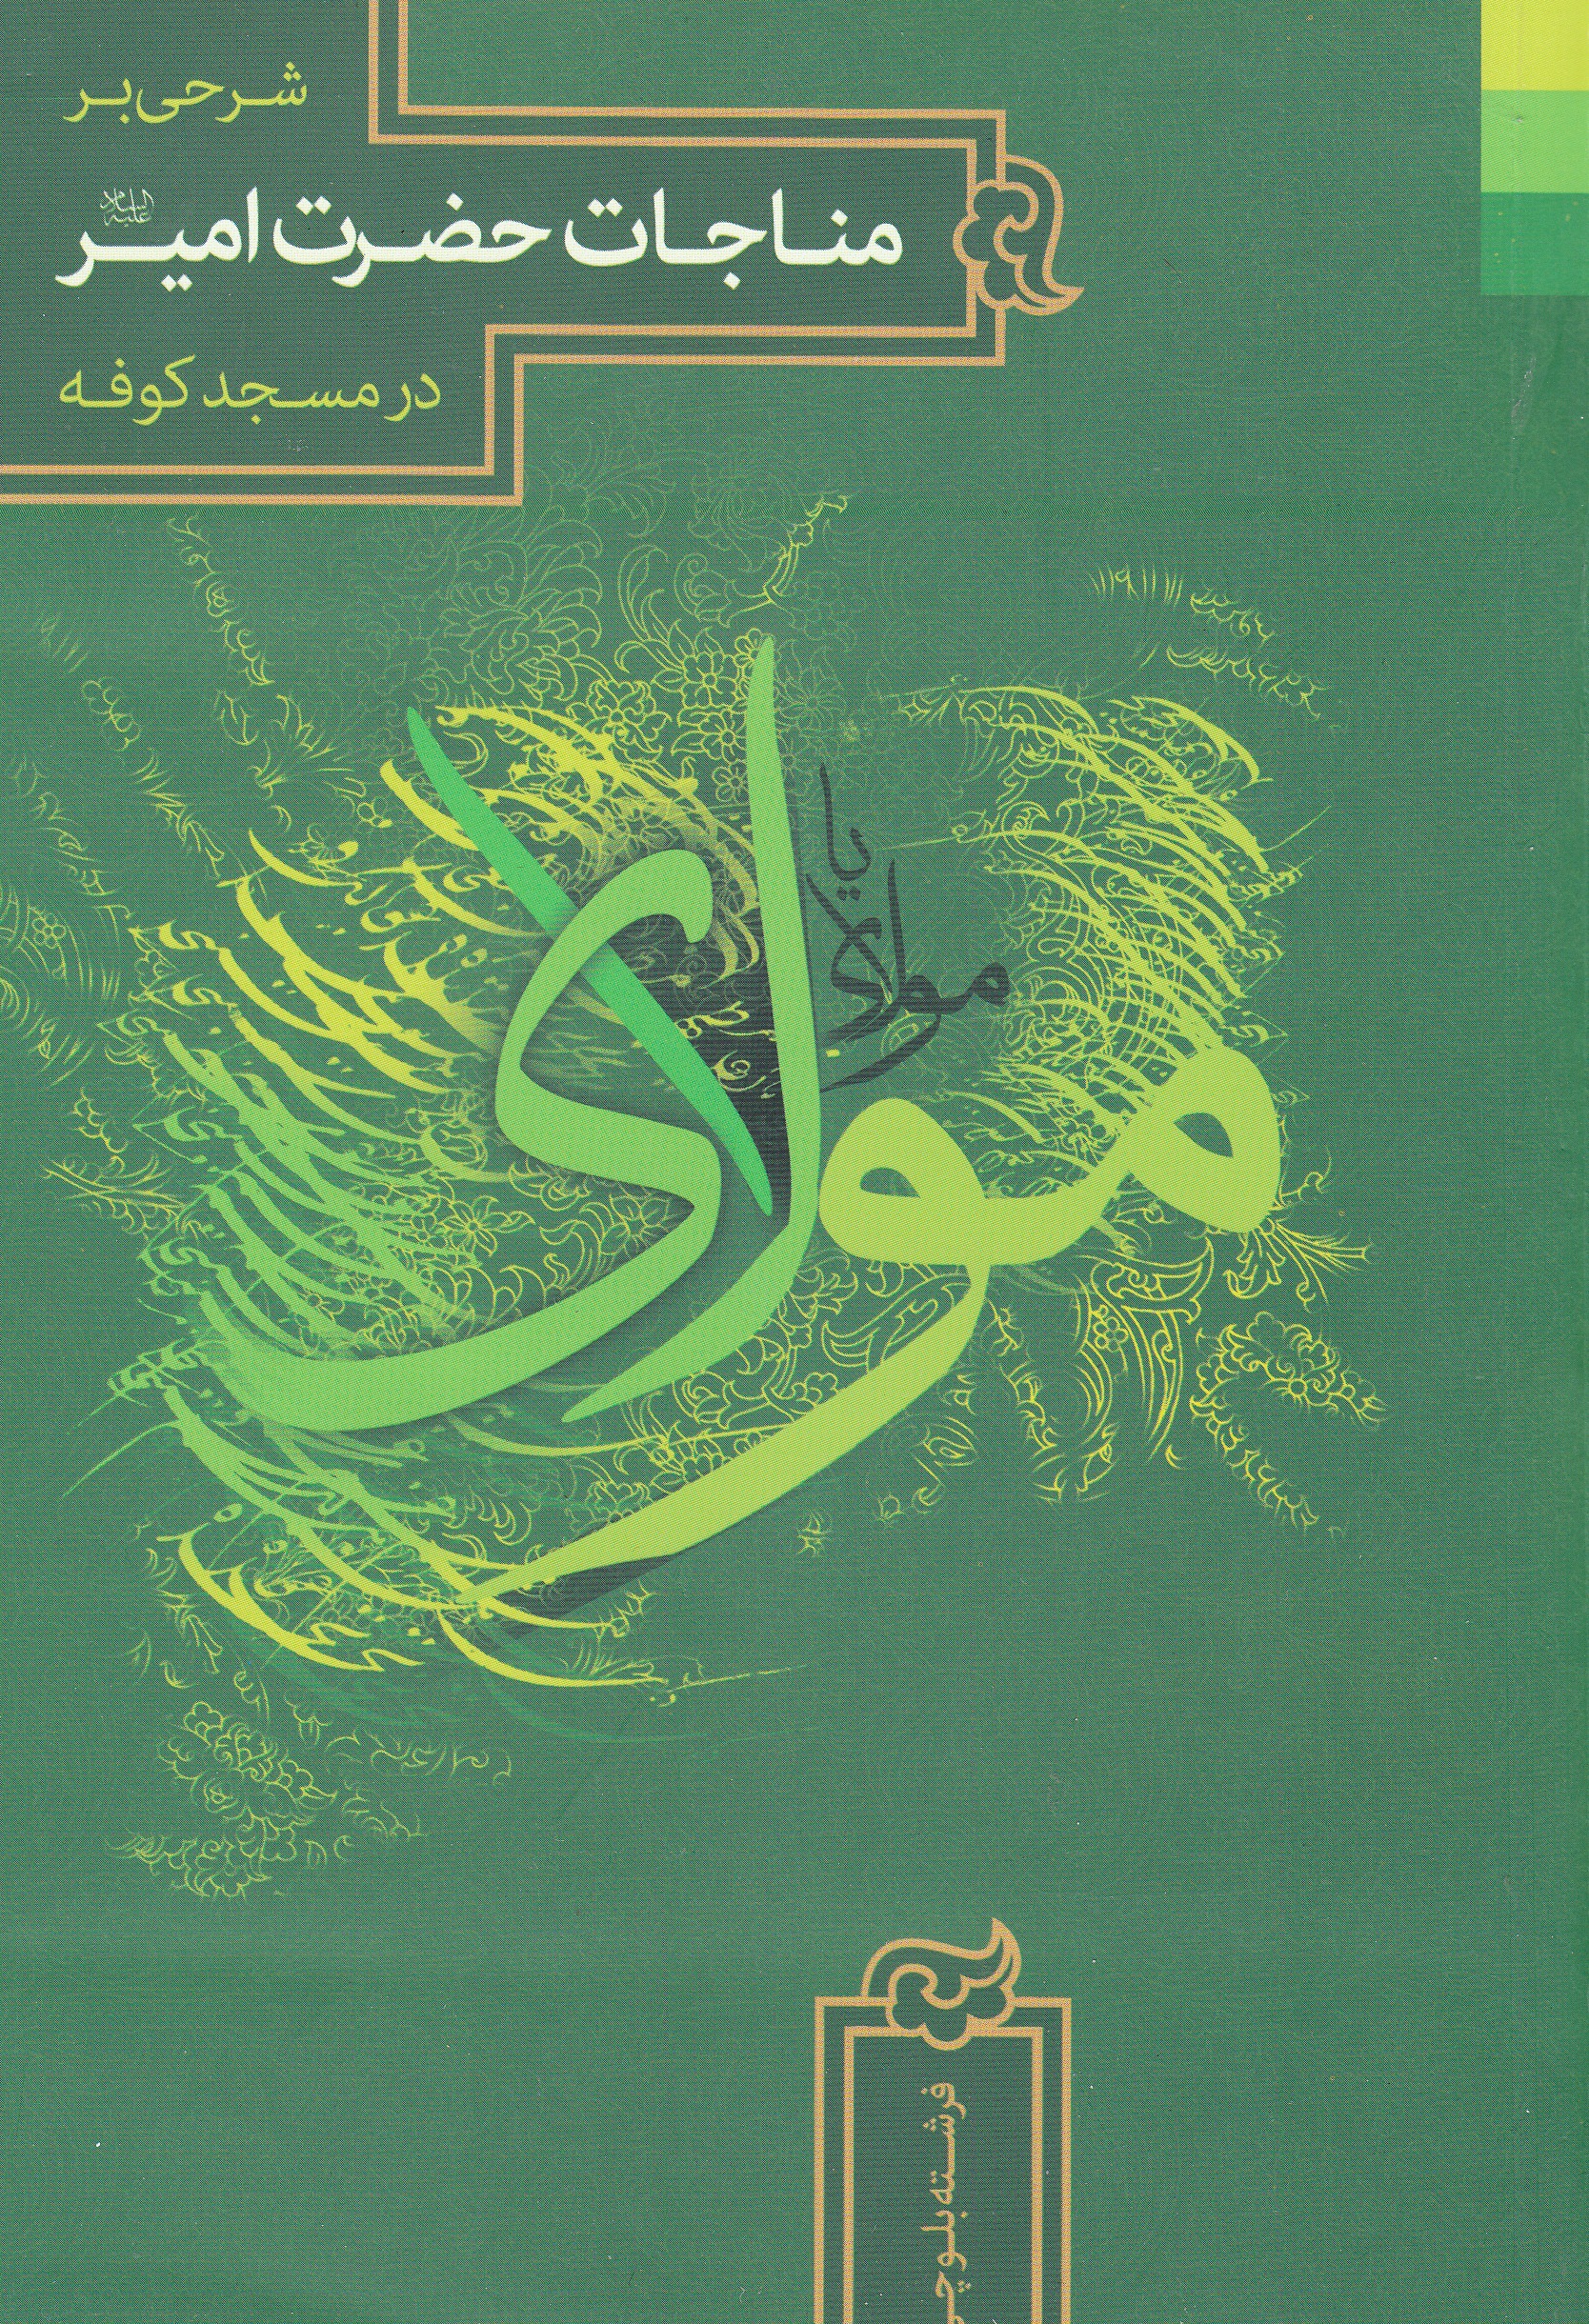  کتاب «شرحی بر مناجات حضرت امیر در مسجد کوفه»